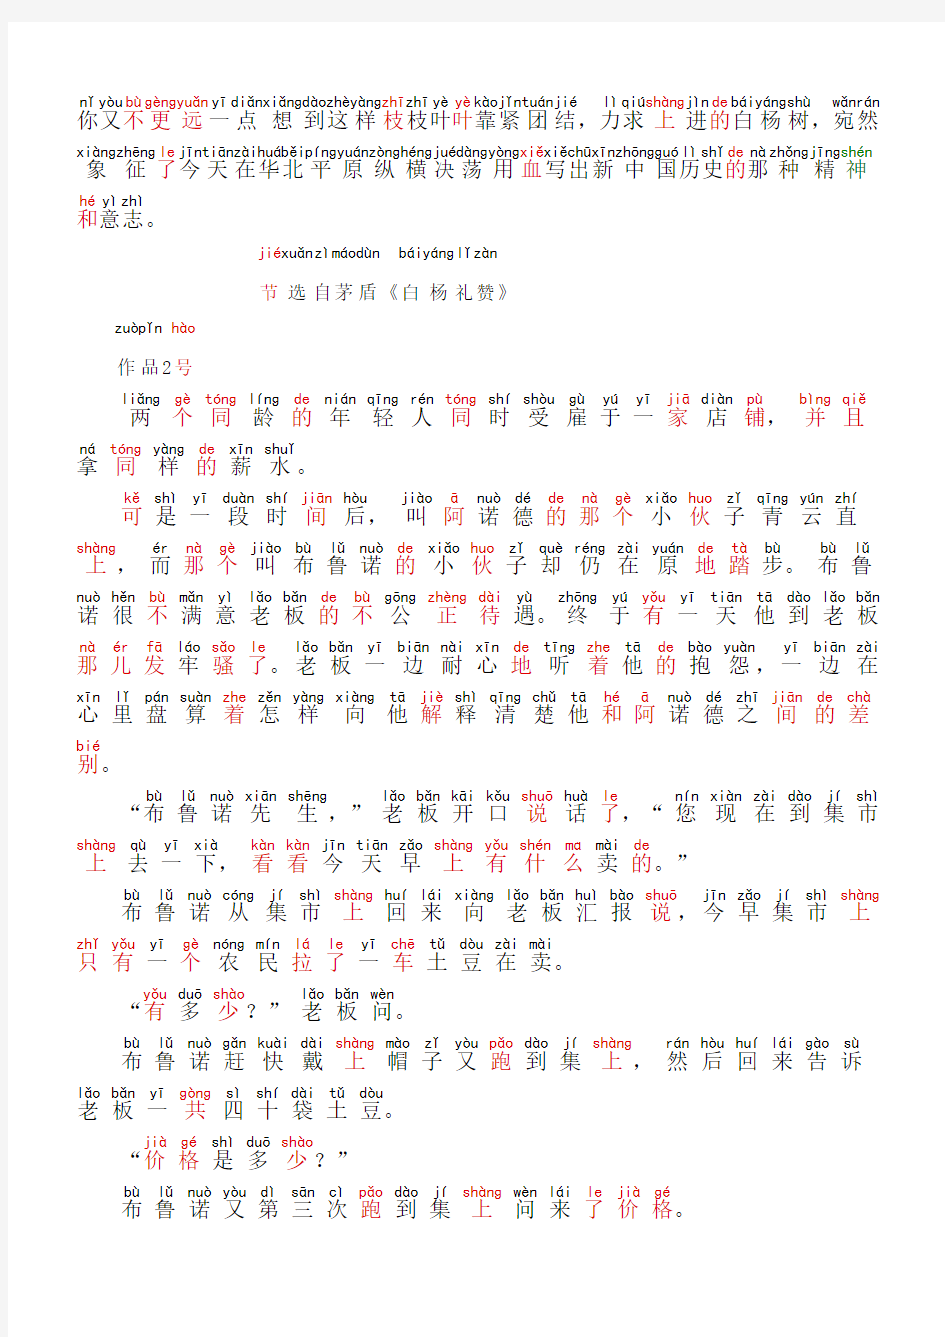 普通话朗读范文60篇拼音版1-30